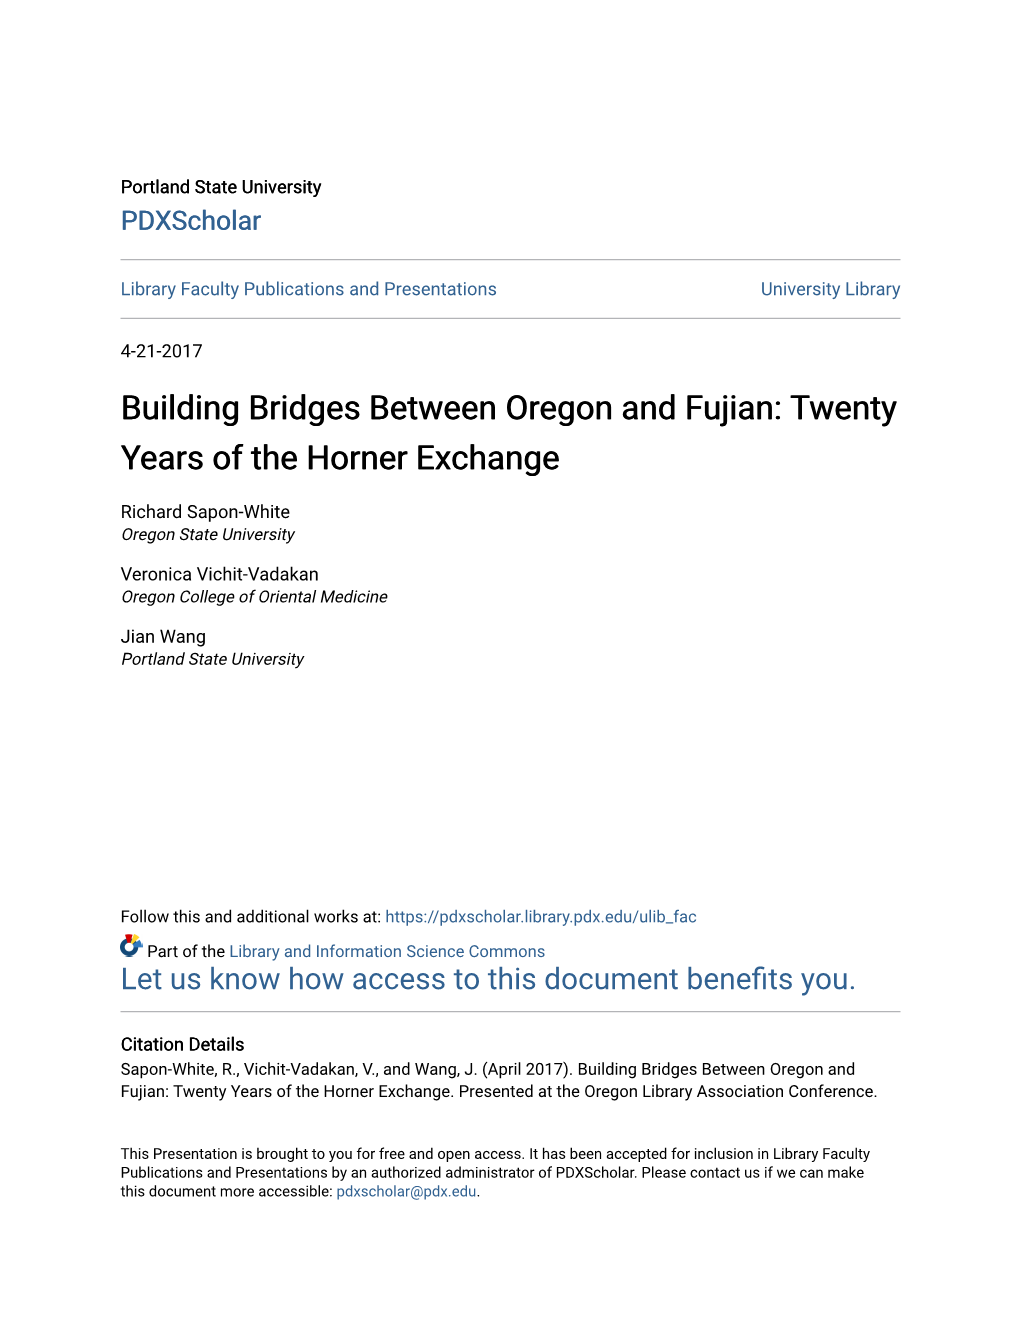 Building Bridges Between Oregon and Fujian: Twenty Years of the Horner Exchange